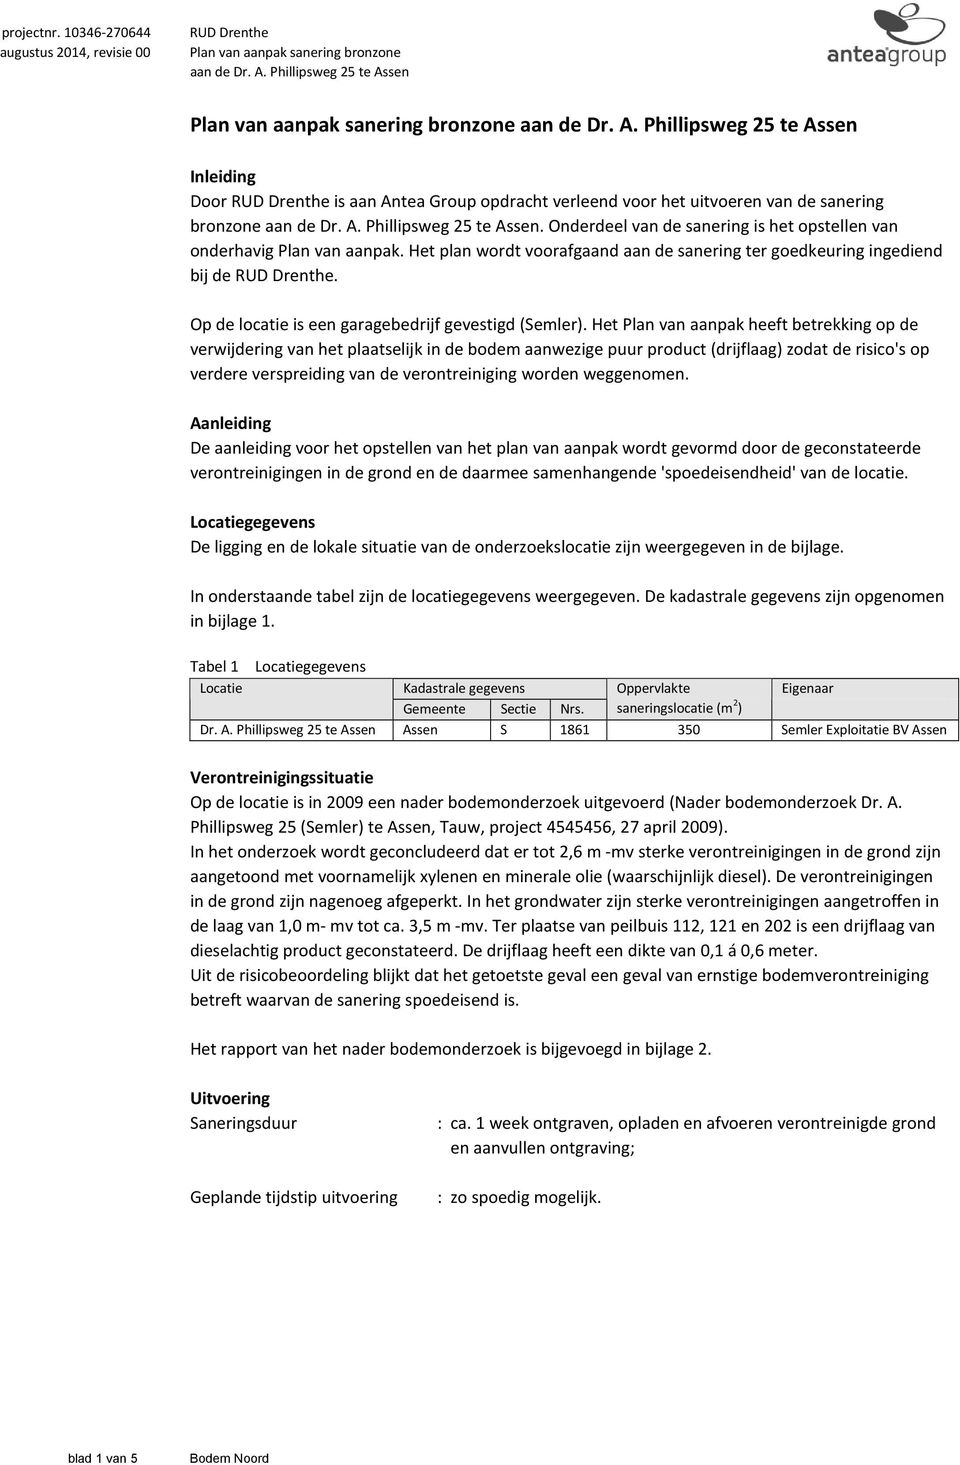 A. Phillipsweg 25 te Assen. Onderdeel van de sanering is het opstellen van onderhavig Plan van aanpak. Het plan wordt voorafgaand aan de sanering ter goedkeuring ingediend bij de RUD Drenthe.